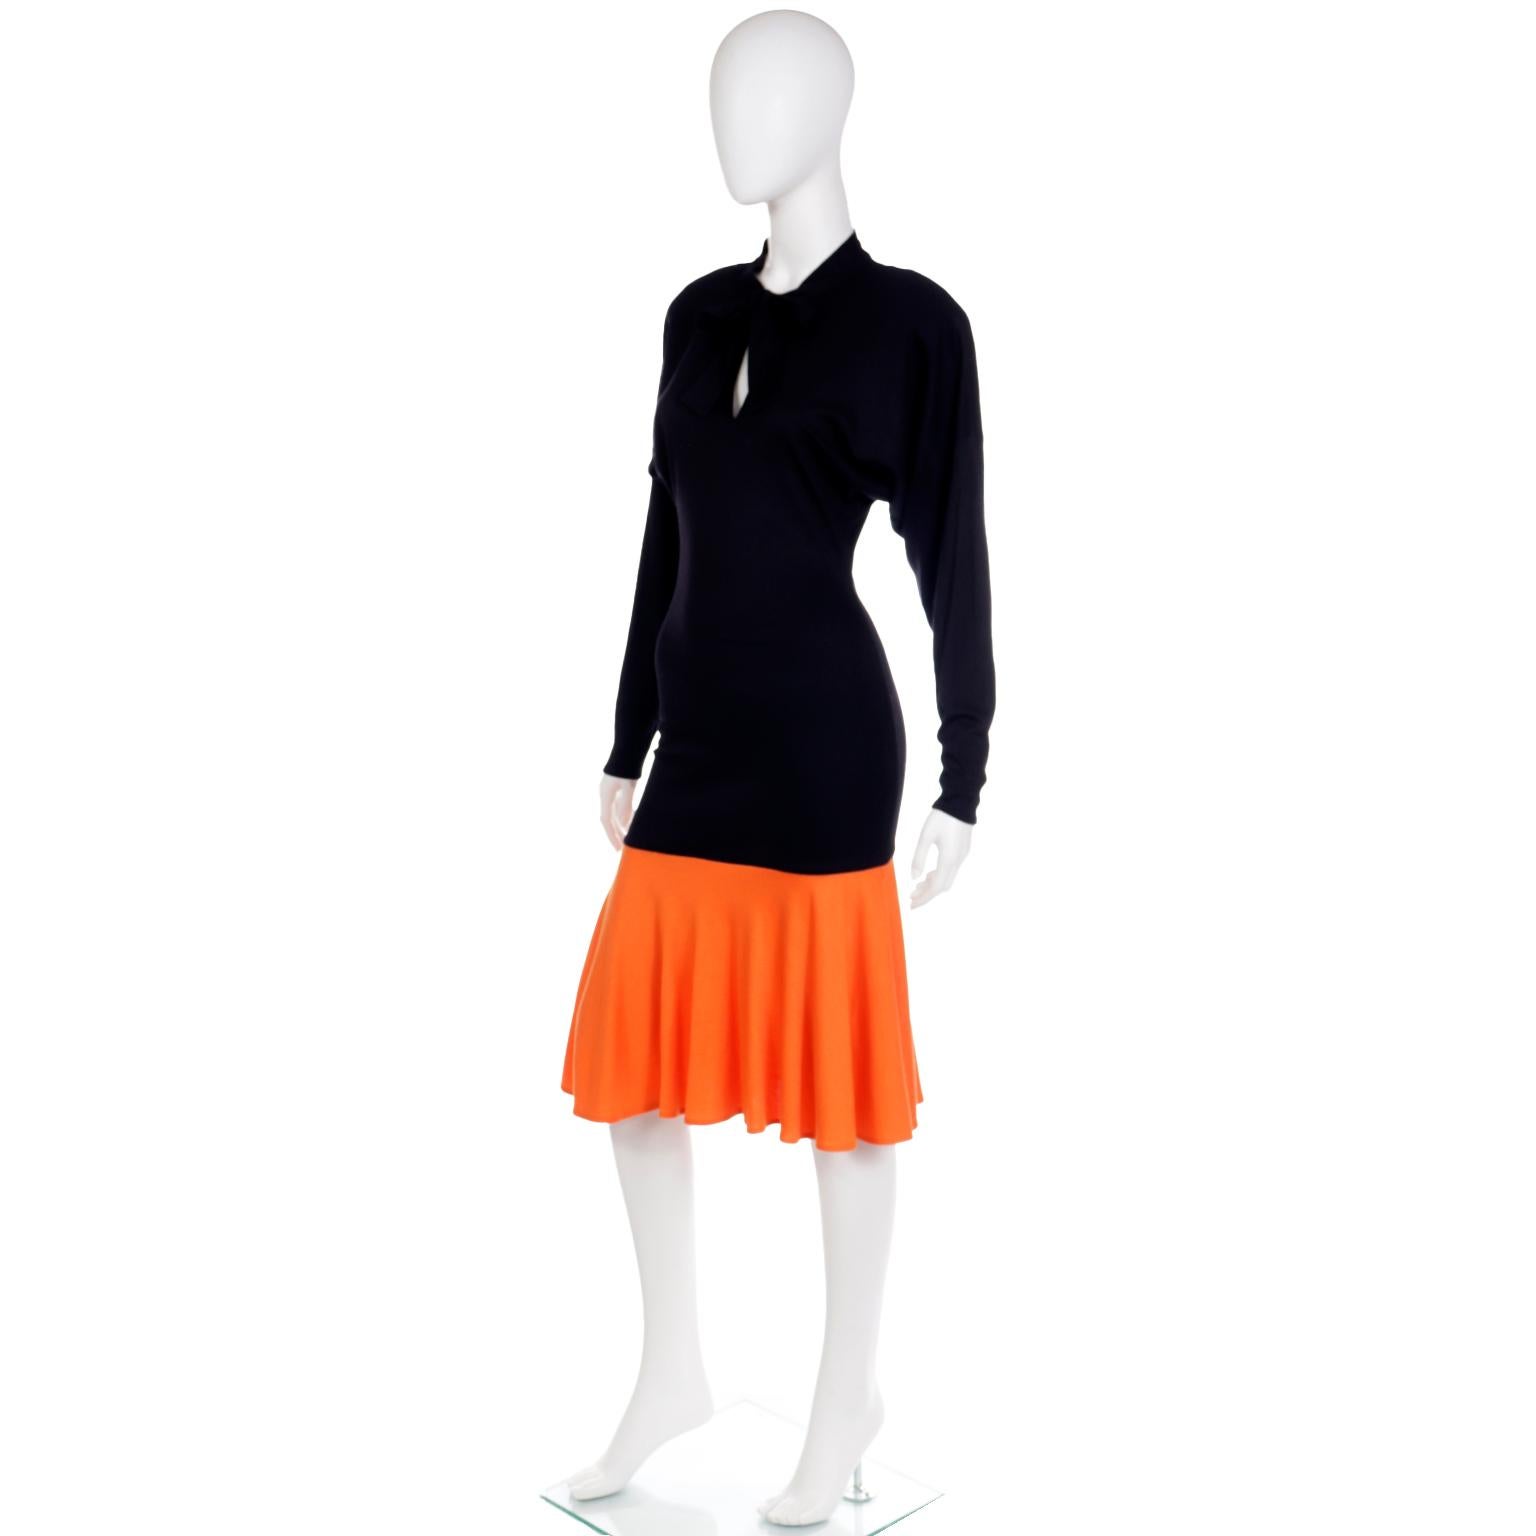 Rare Patrick Kelly Paris F/W 1988 Black & Orange Color Block Vintage Dress For Sale 3